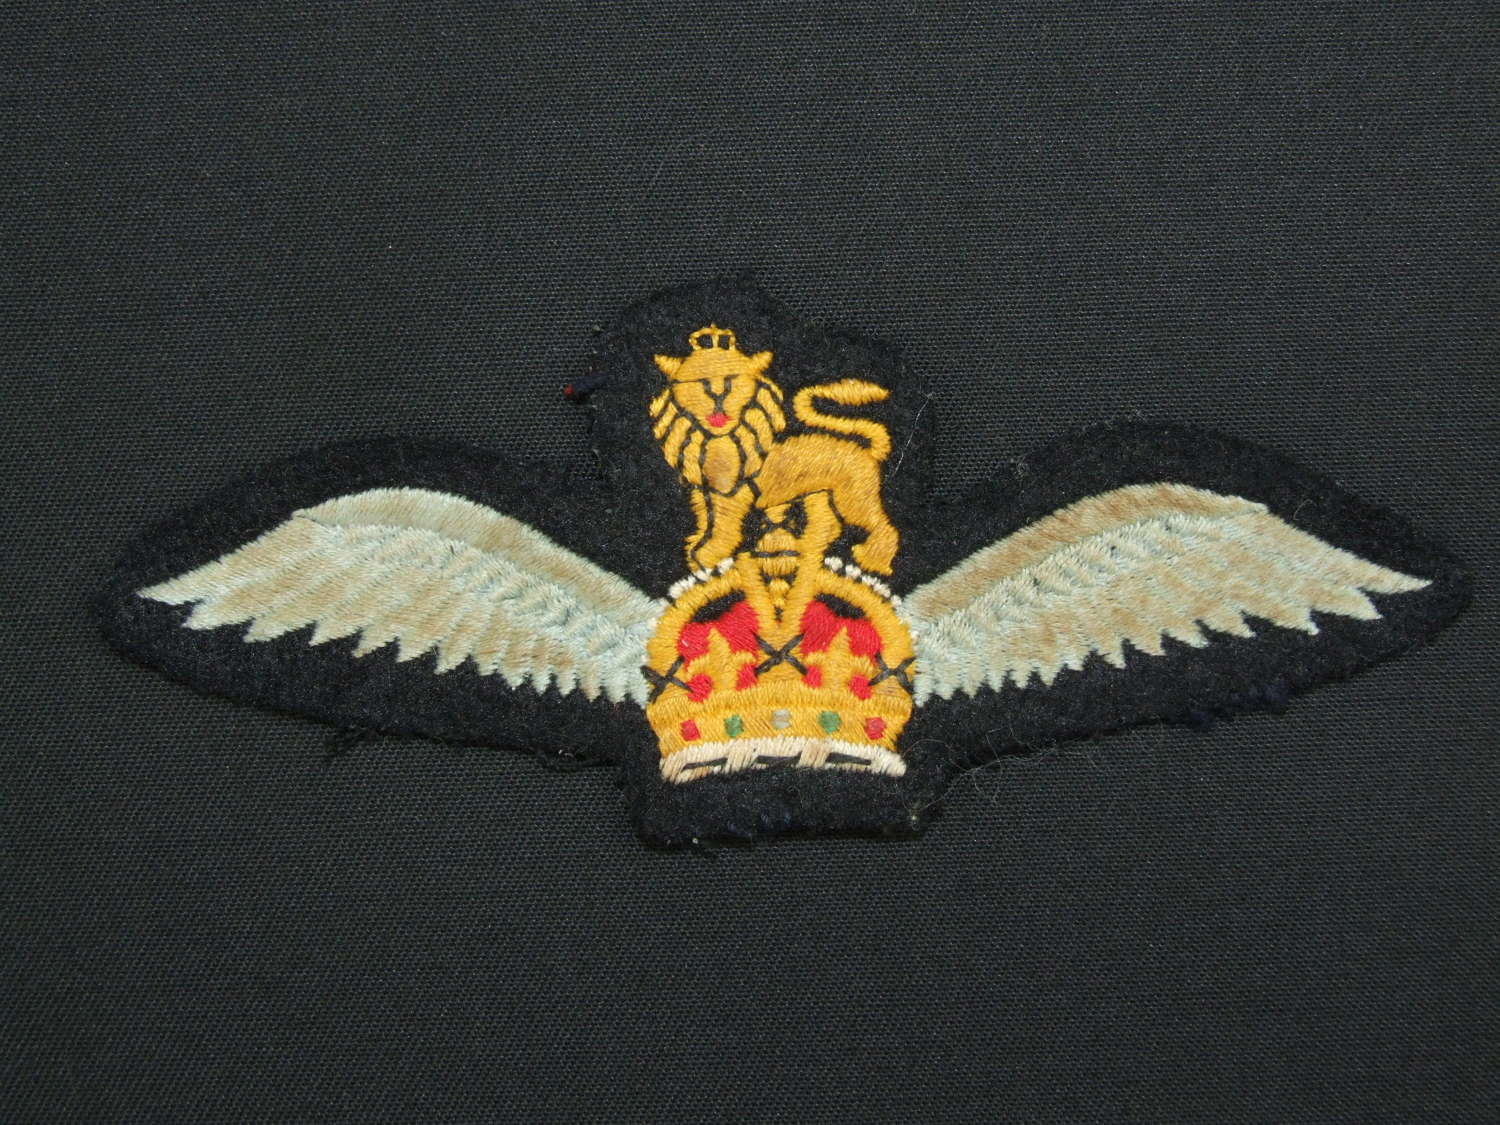 KIngs Crown Army Badge of Flying